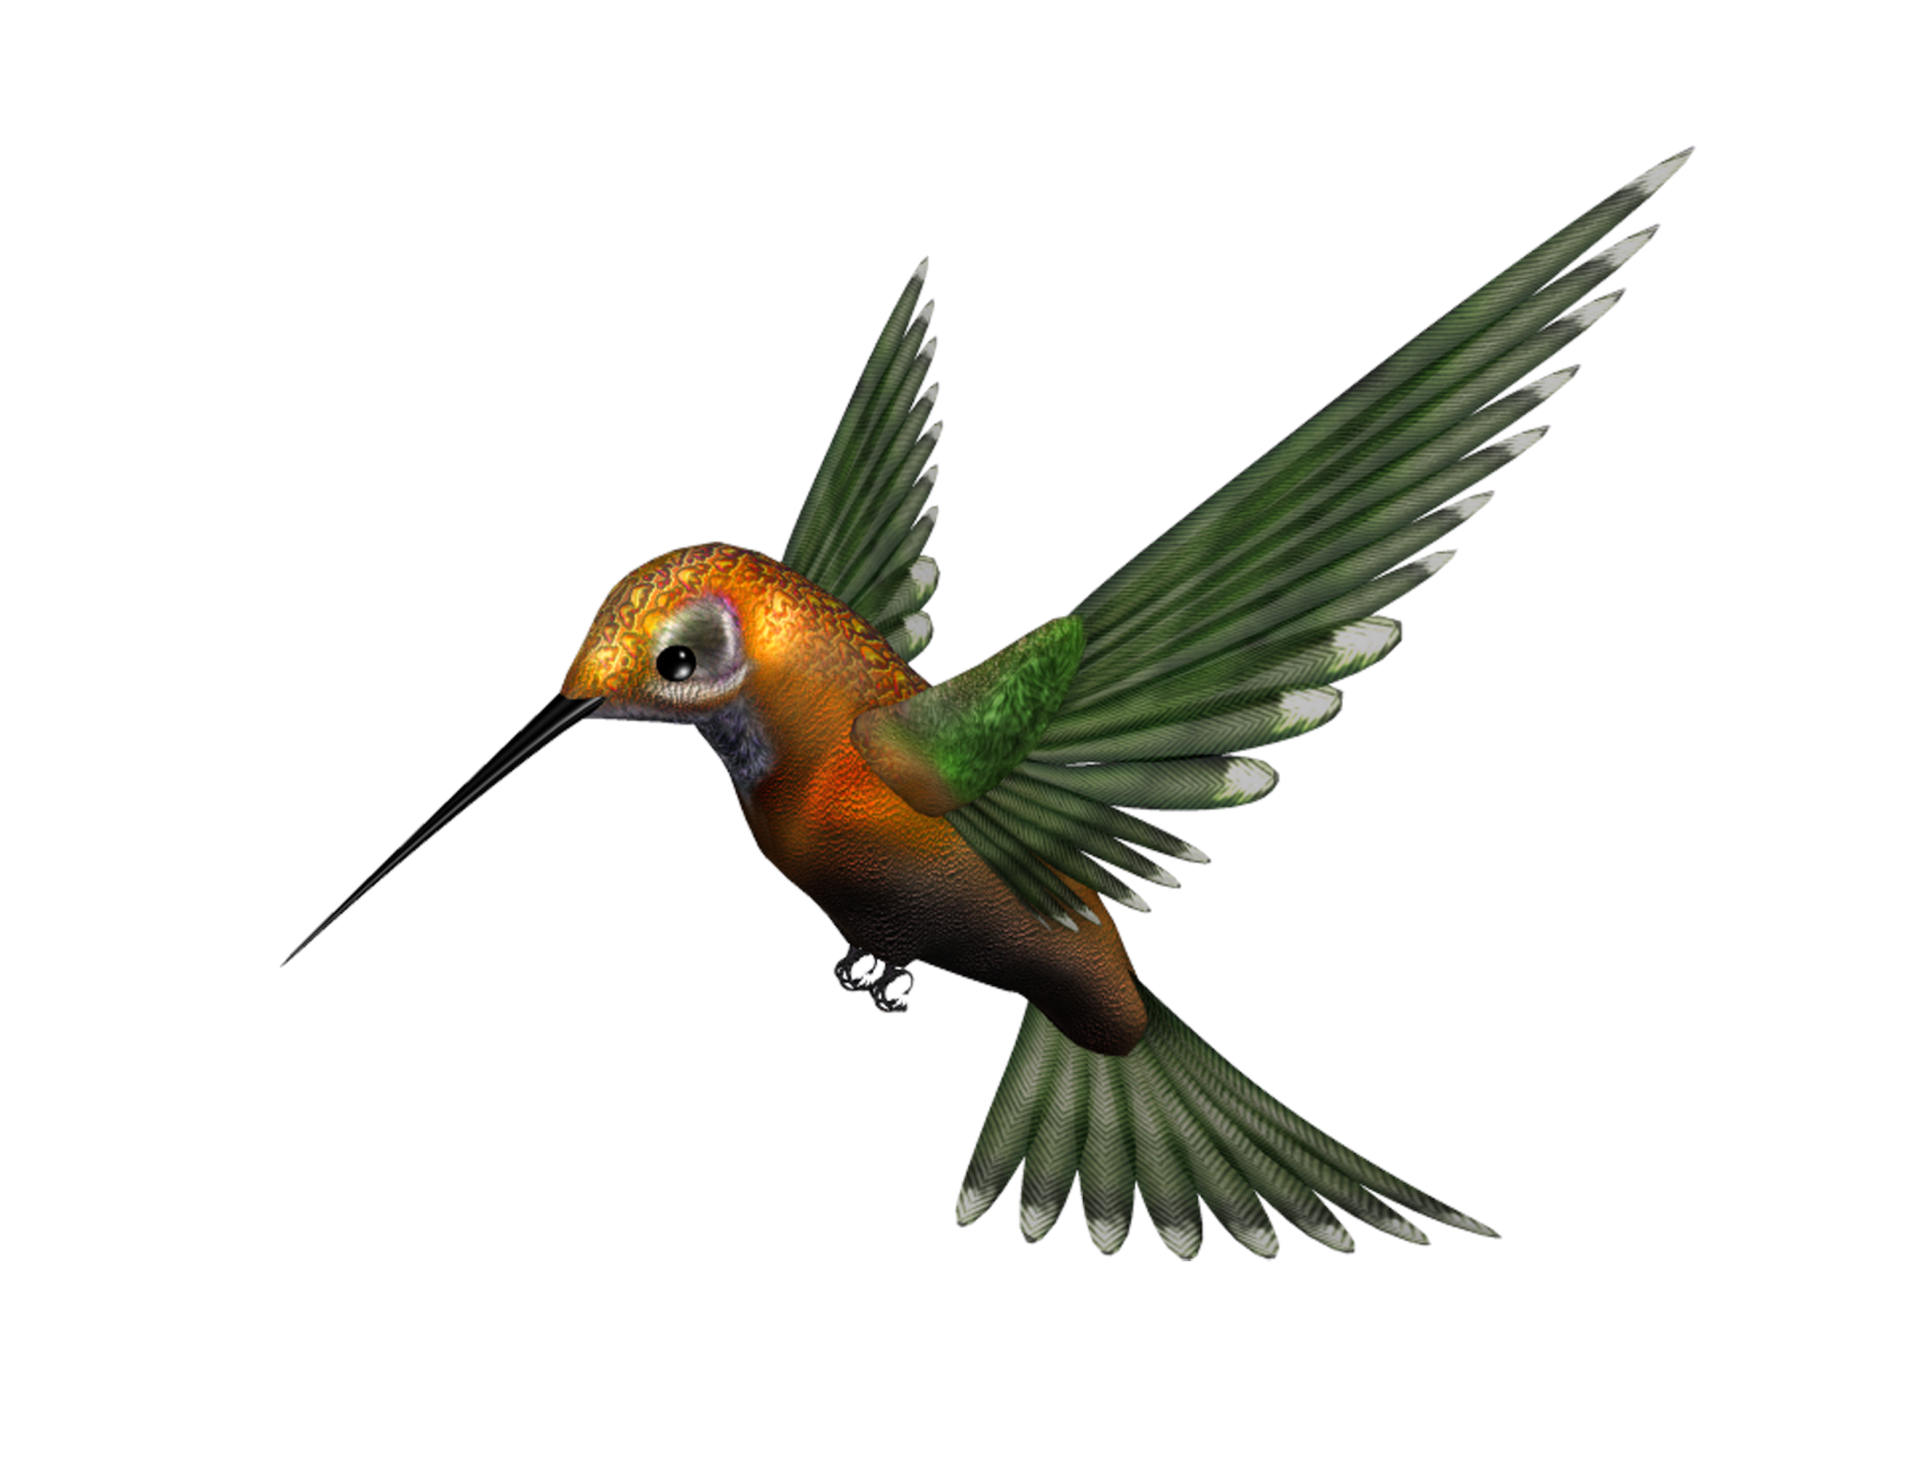 Arte vintage de pájaro colibrí